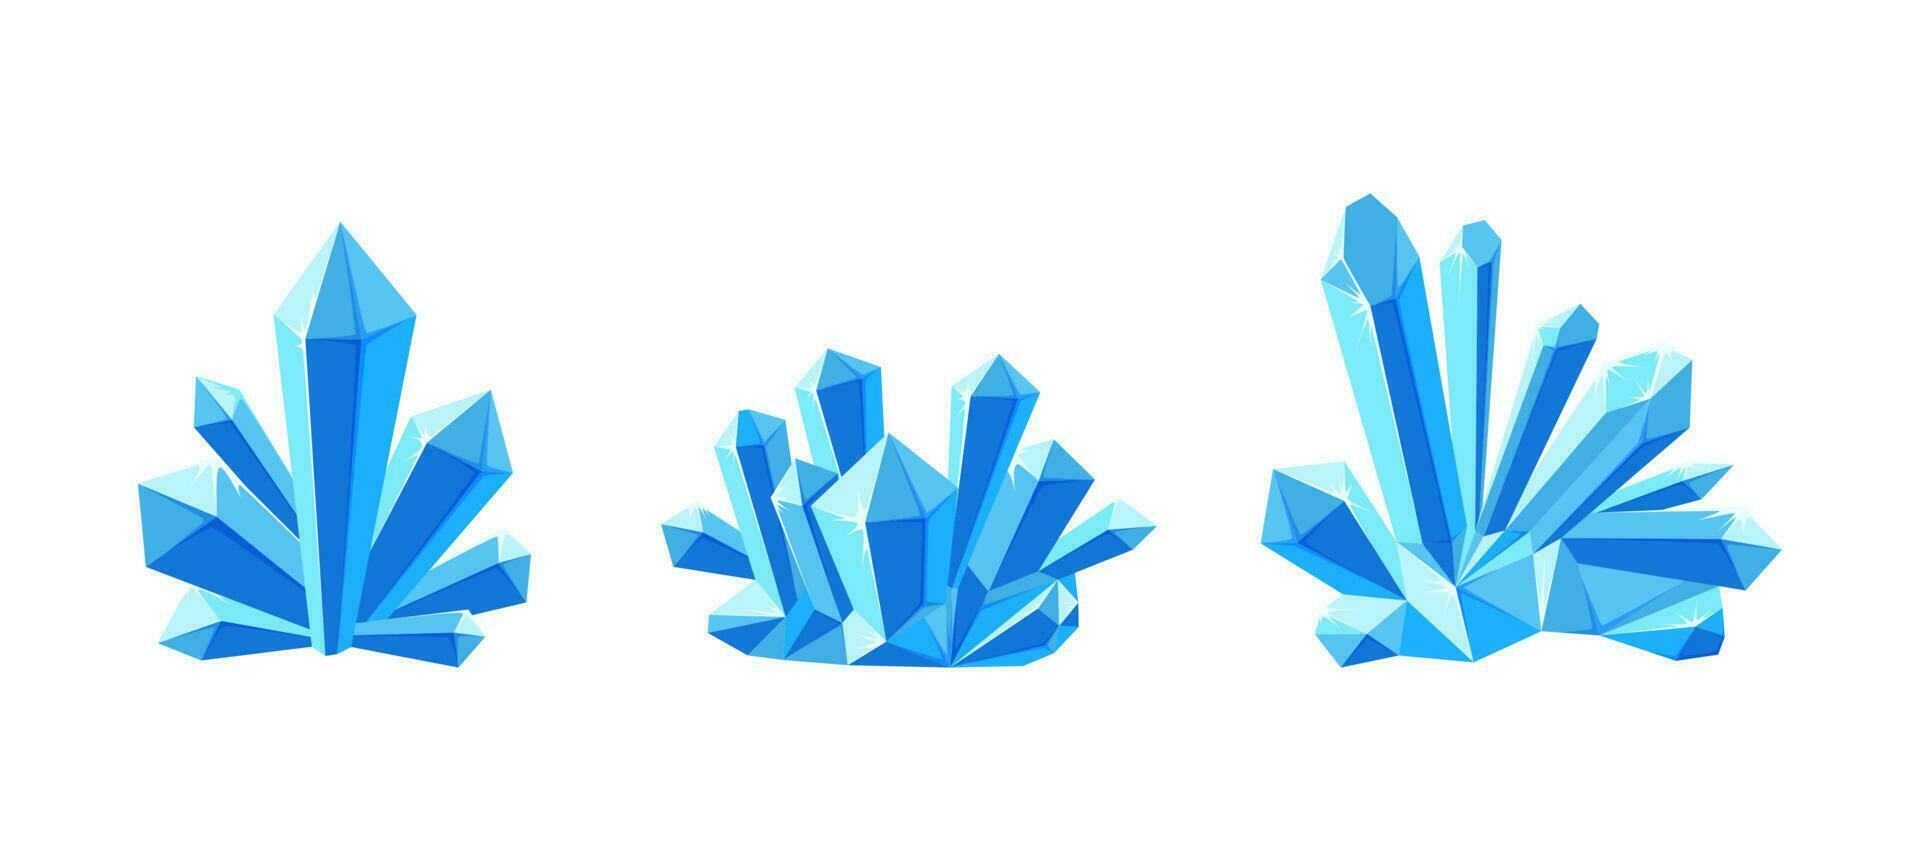 hielo cristales o joya piedras con sombra. conjunto de cristal druso hecho de azul mineral. vector ilustración en dibujos animados estilo